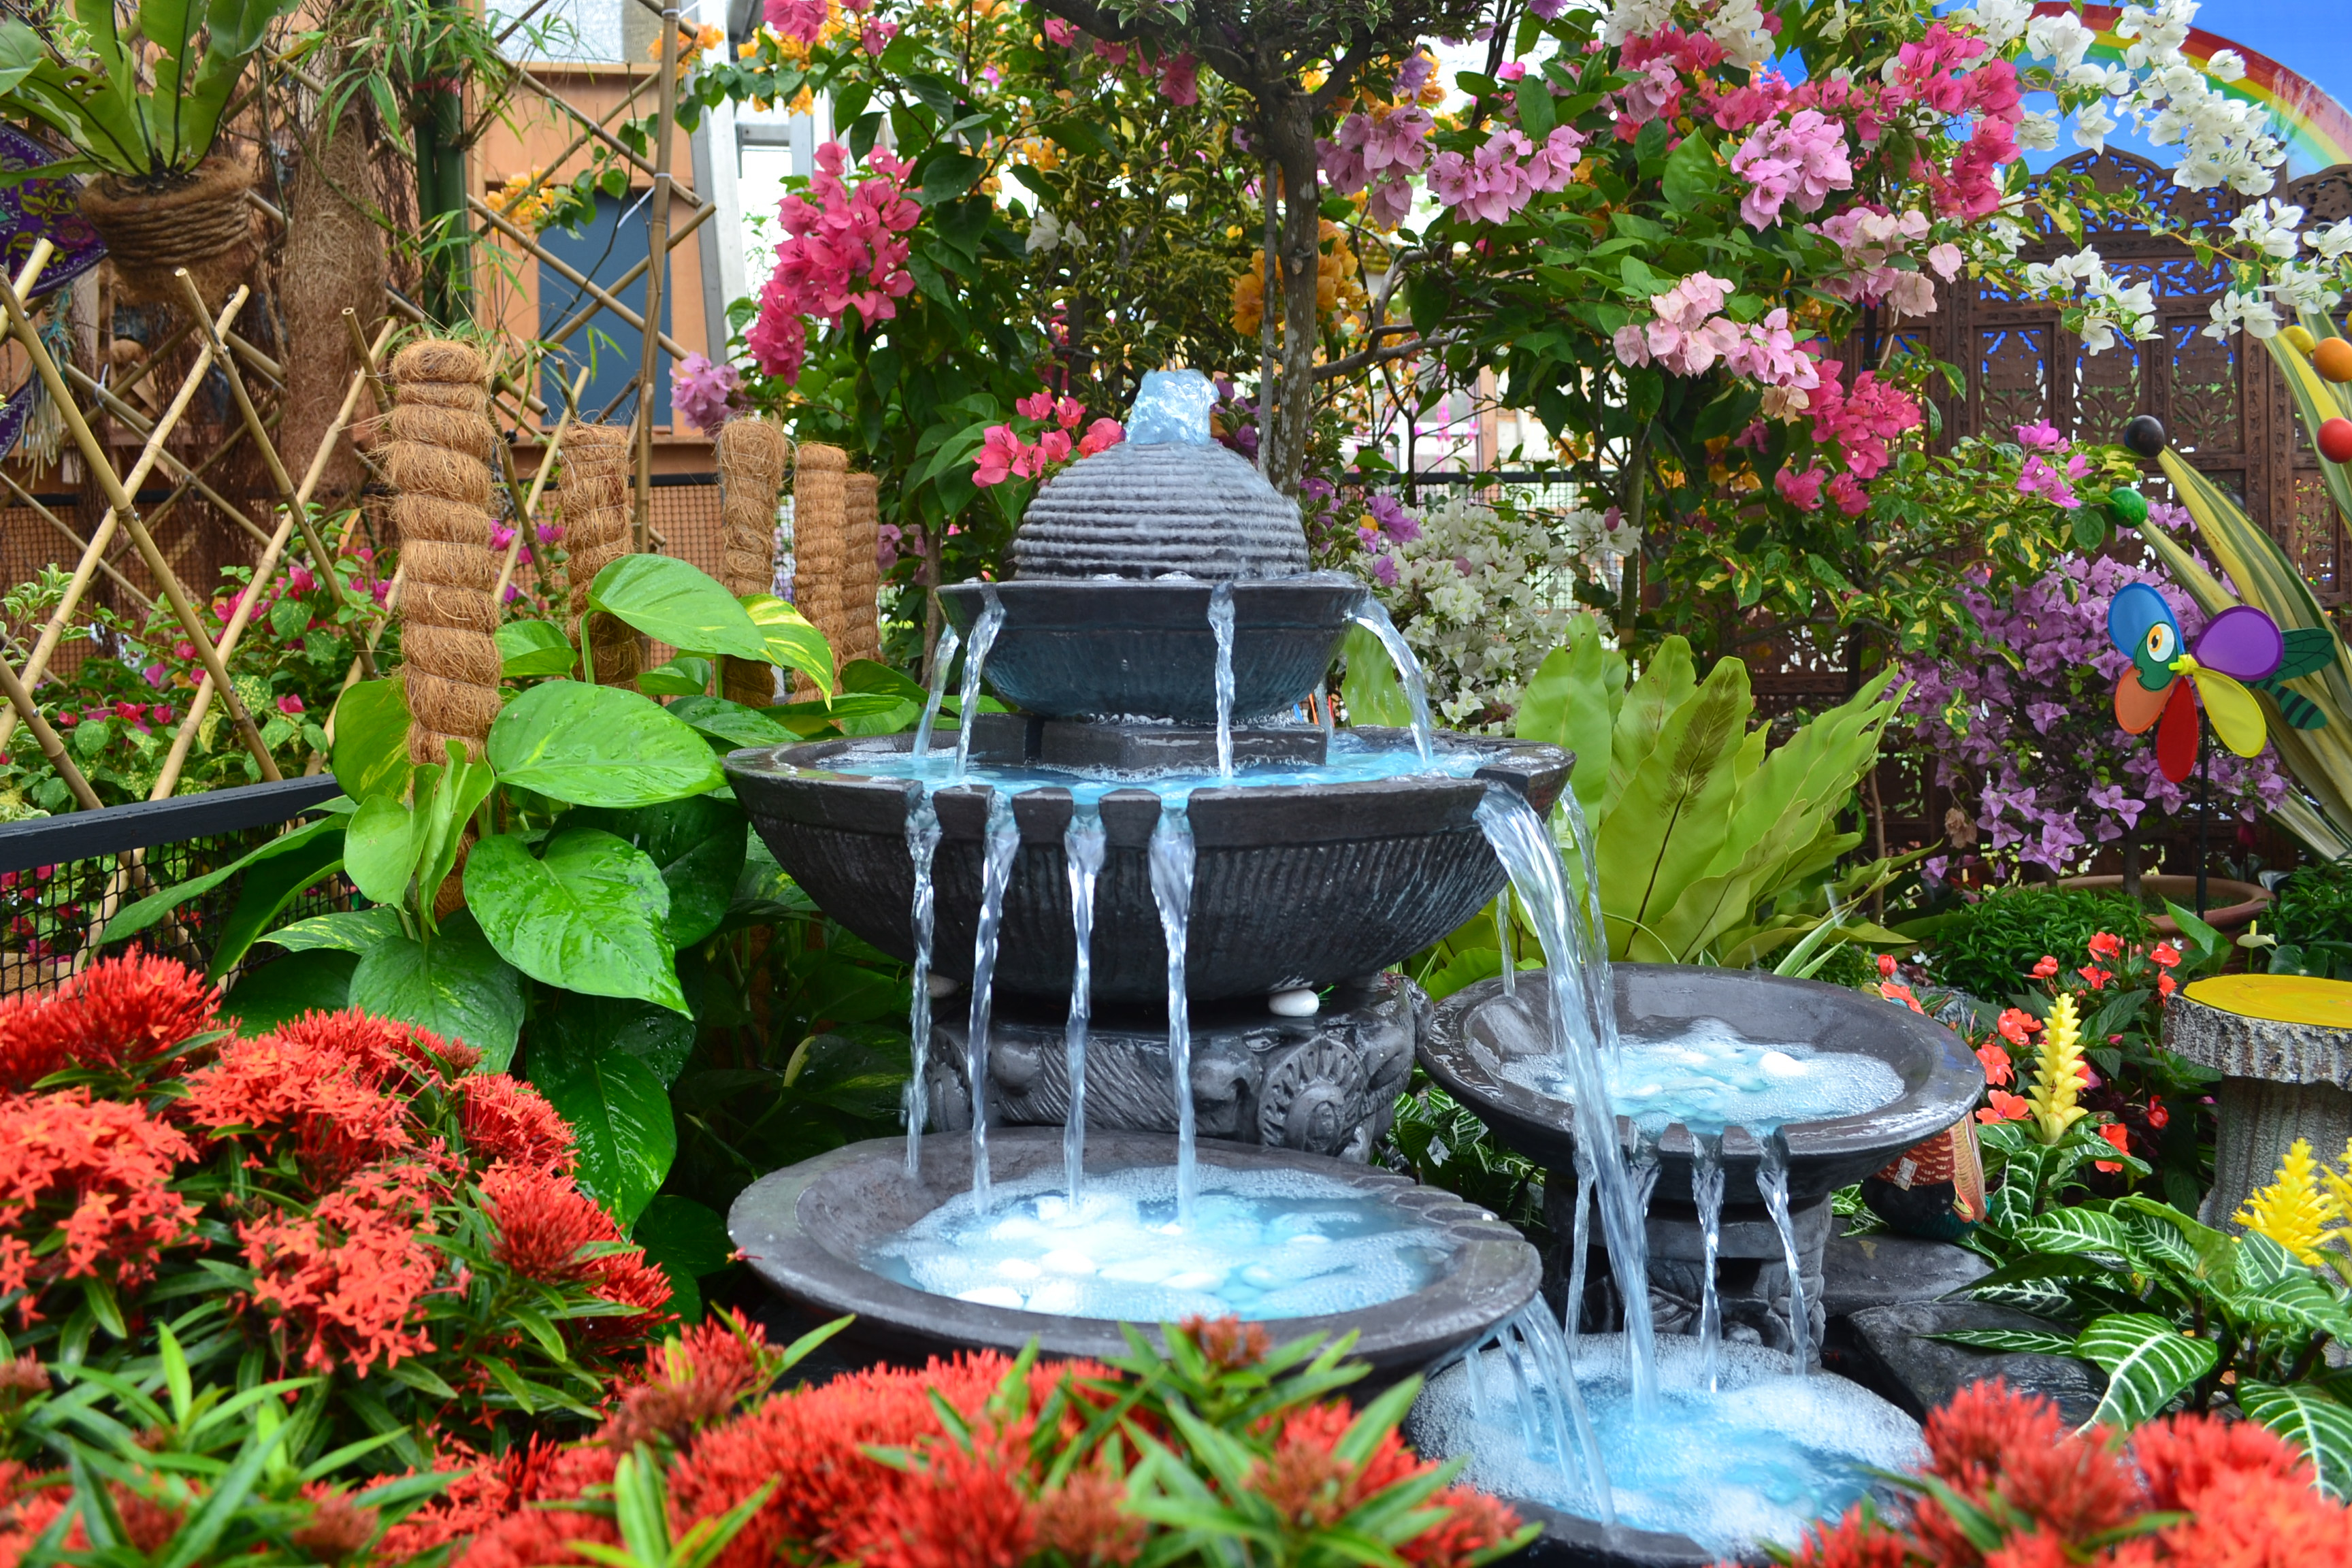 Les fontaines de jardin se déclinent dans des styles, matériaux et modes de fonctionnement divers. Copyright (c) 2018 Anis Mardhiah/Shutterstock.